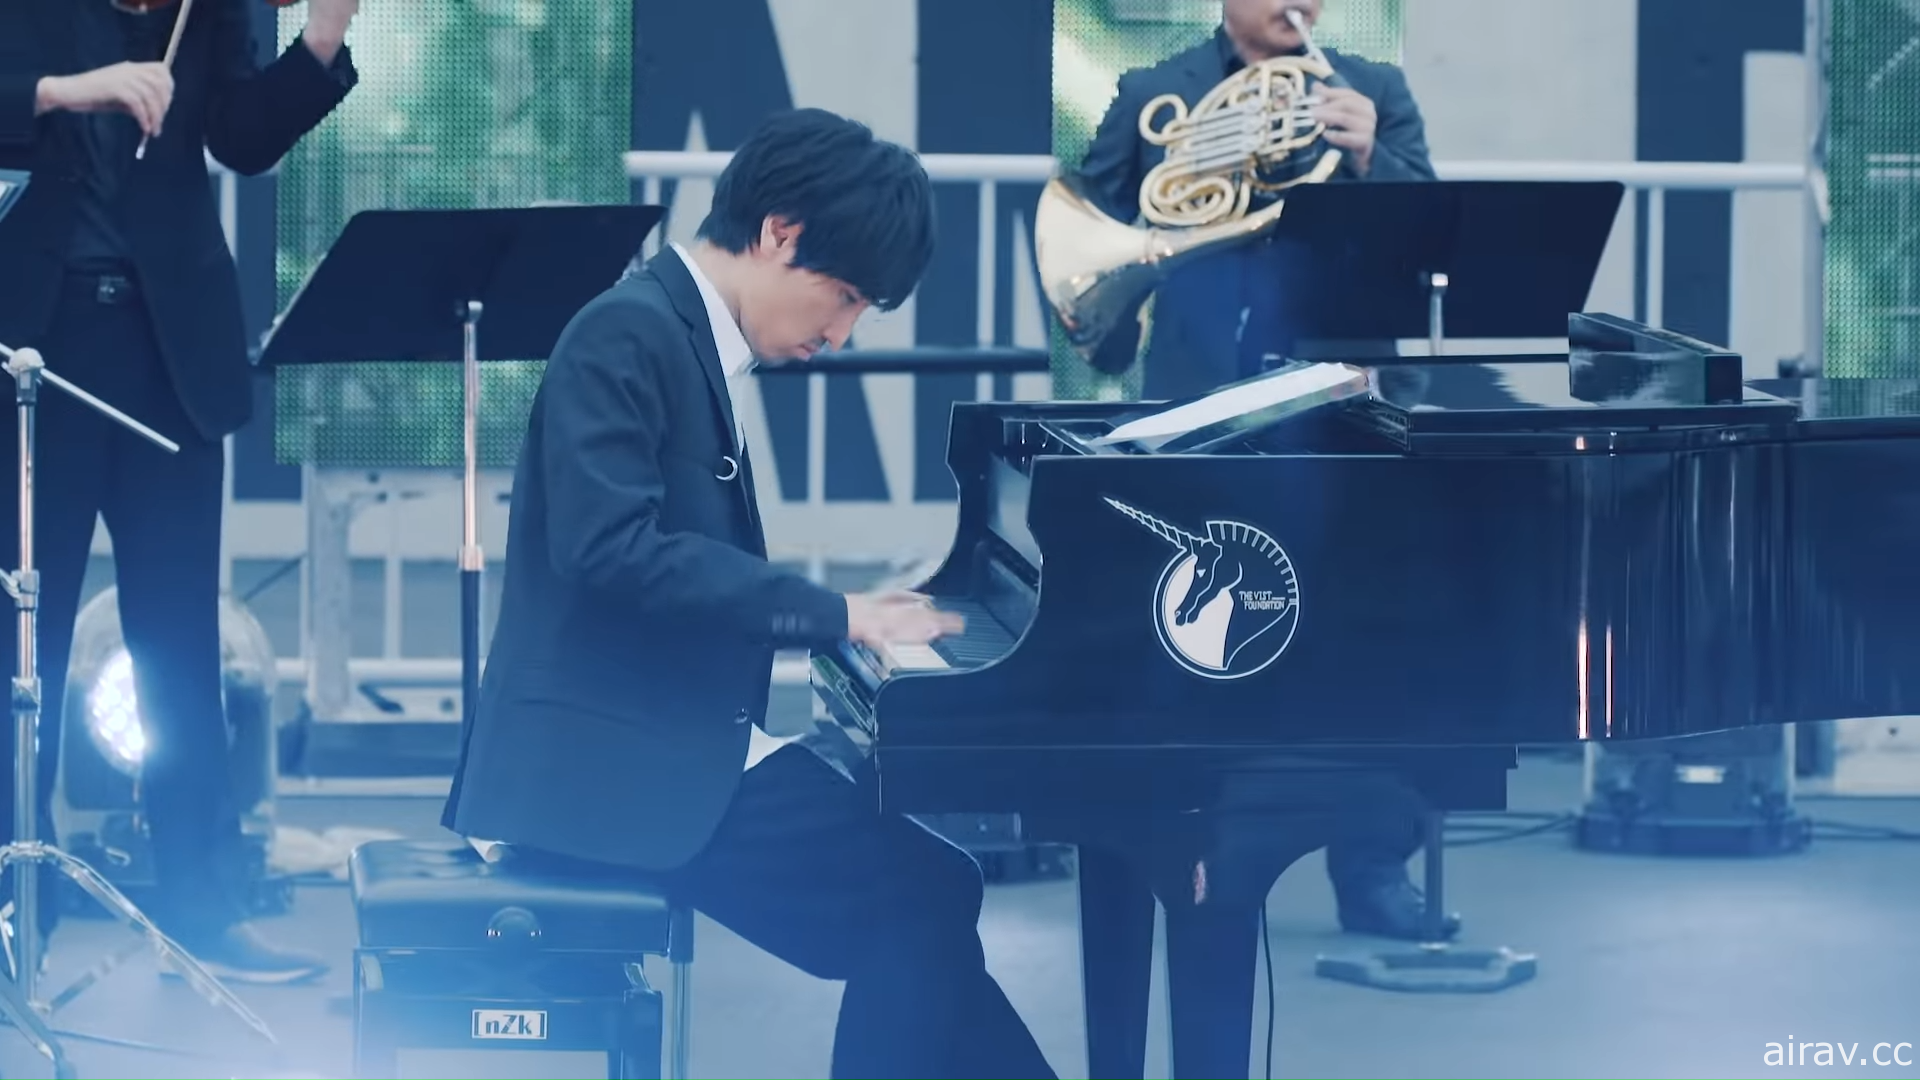 澤野弘之於橫濱鋼彈立像前演奏《鋼彈 UC》組曲 官方釋出音樂影像